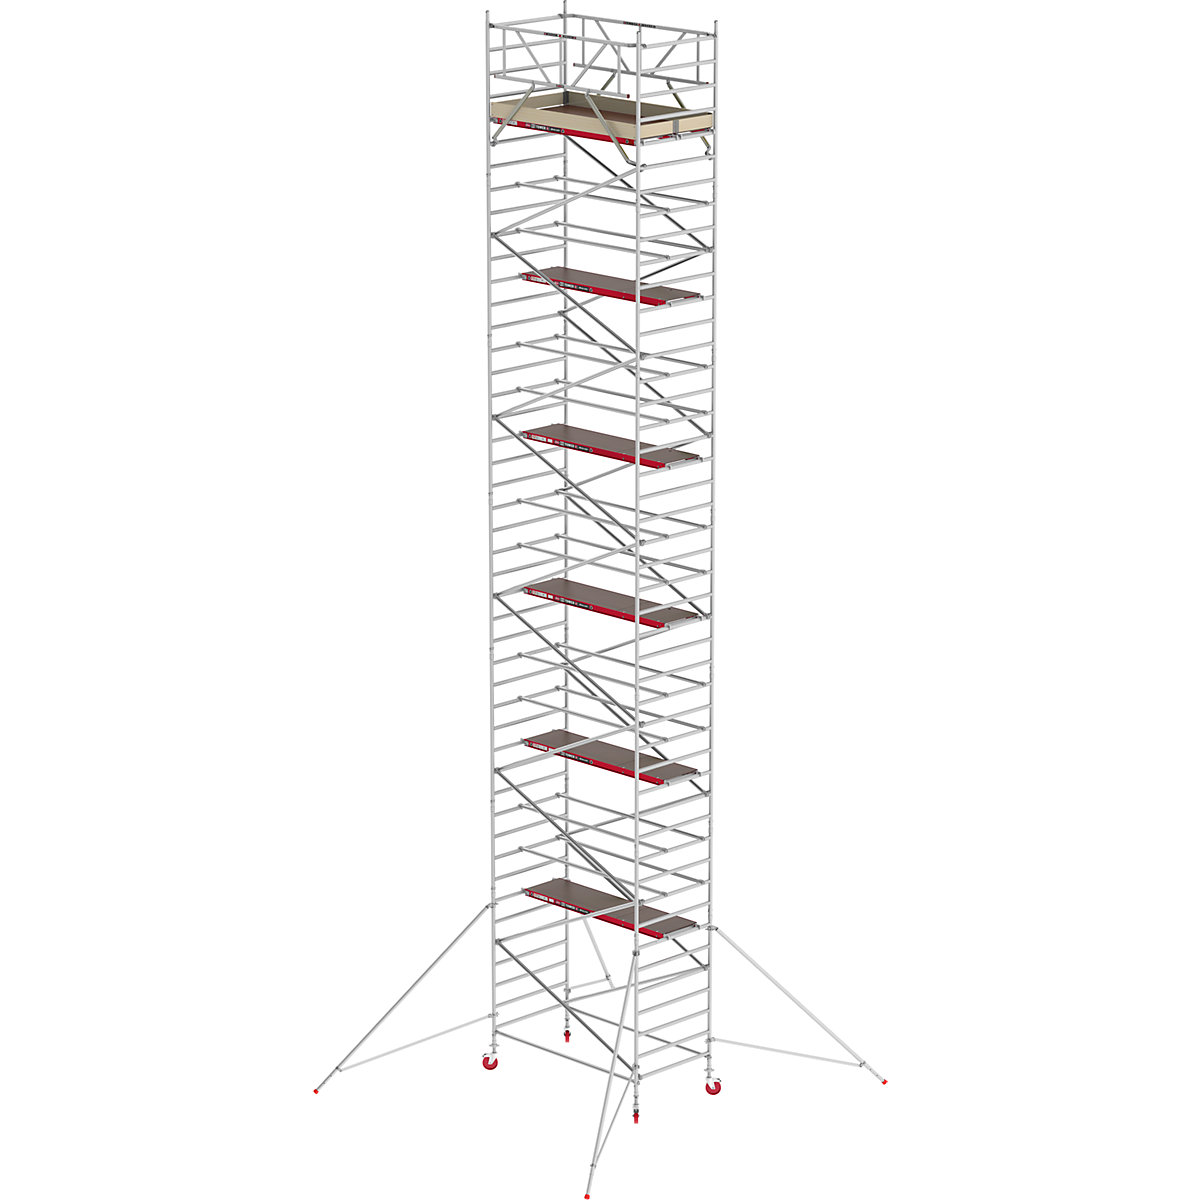 Schelă mobilă RS TOWER 42 lată – Altrex, platformă din lemn, lungime 2,45 m, înălțime de lucru 14,20 m-5